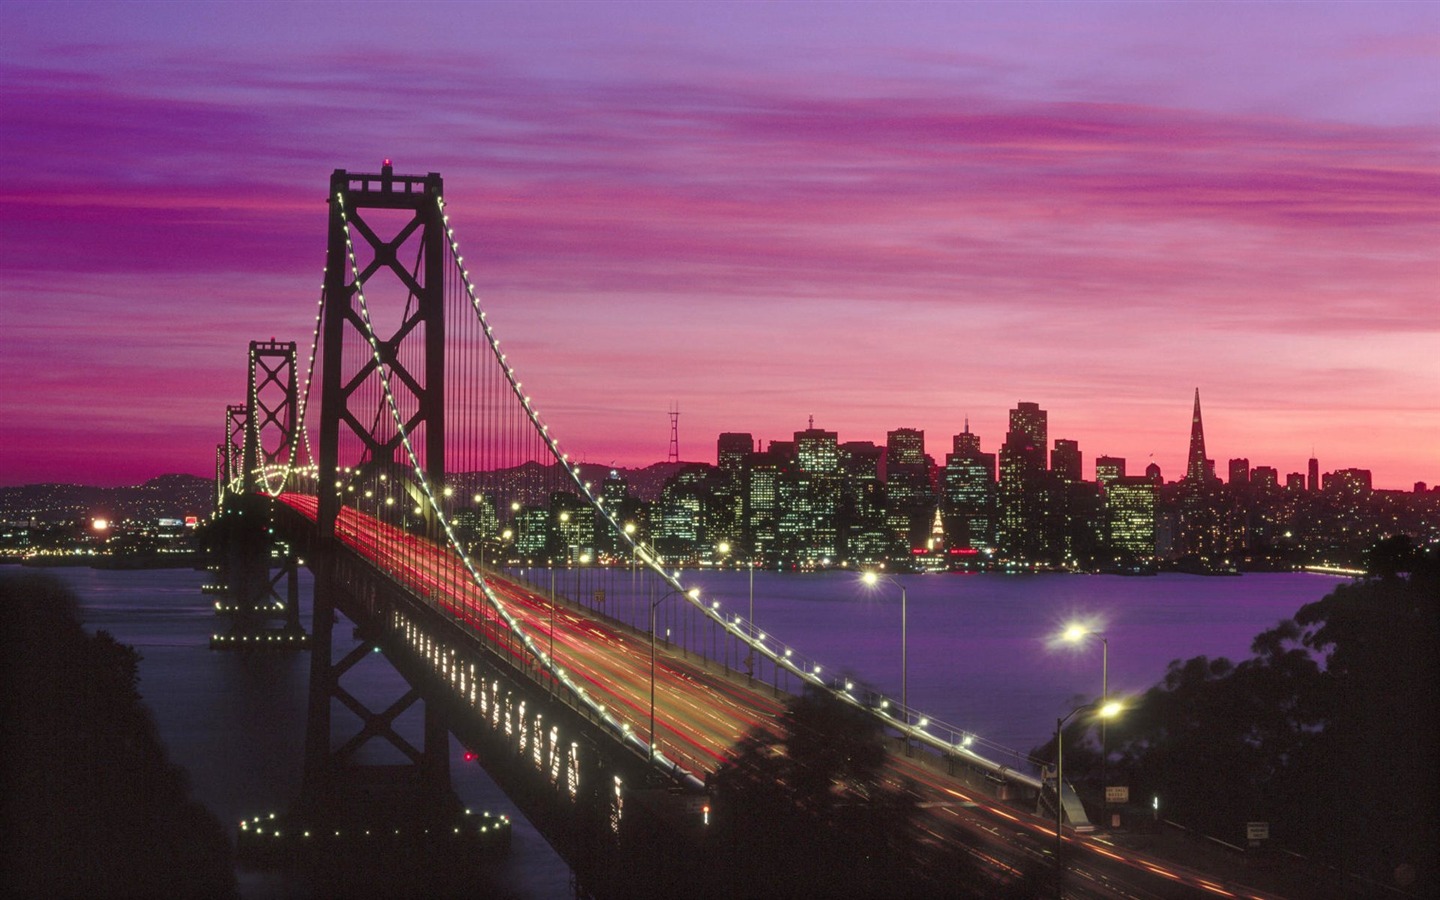  Francisco Oakland Bay Bridge Wallpaper   1440x900 wallpaper download